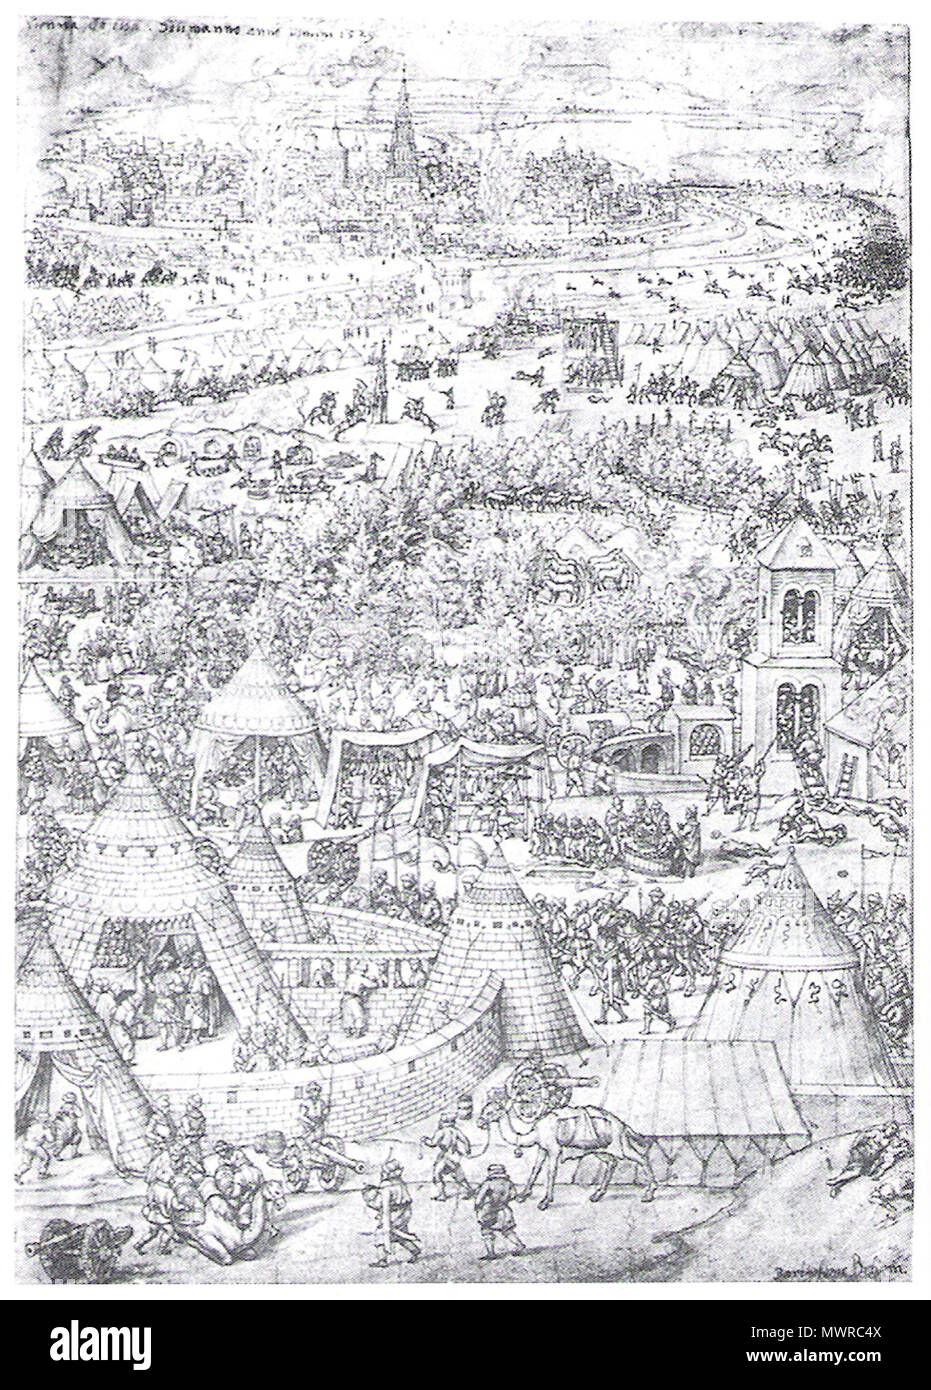 . English: en:Engraving of the Siege of Vienna (1529) Deutsch: Erste Wiener Türkenbelagerung, zeitgenössische Darstellung von Bartholomäus Beham (1502-1540) . w:Bartel Beham 558 Siegeofvienna1529 Stock Photo